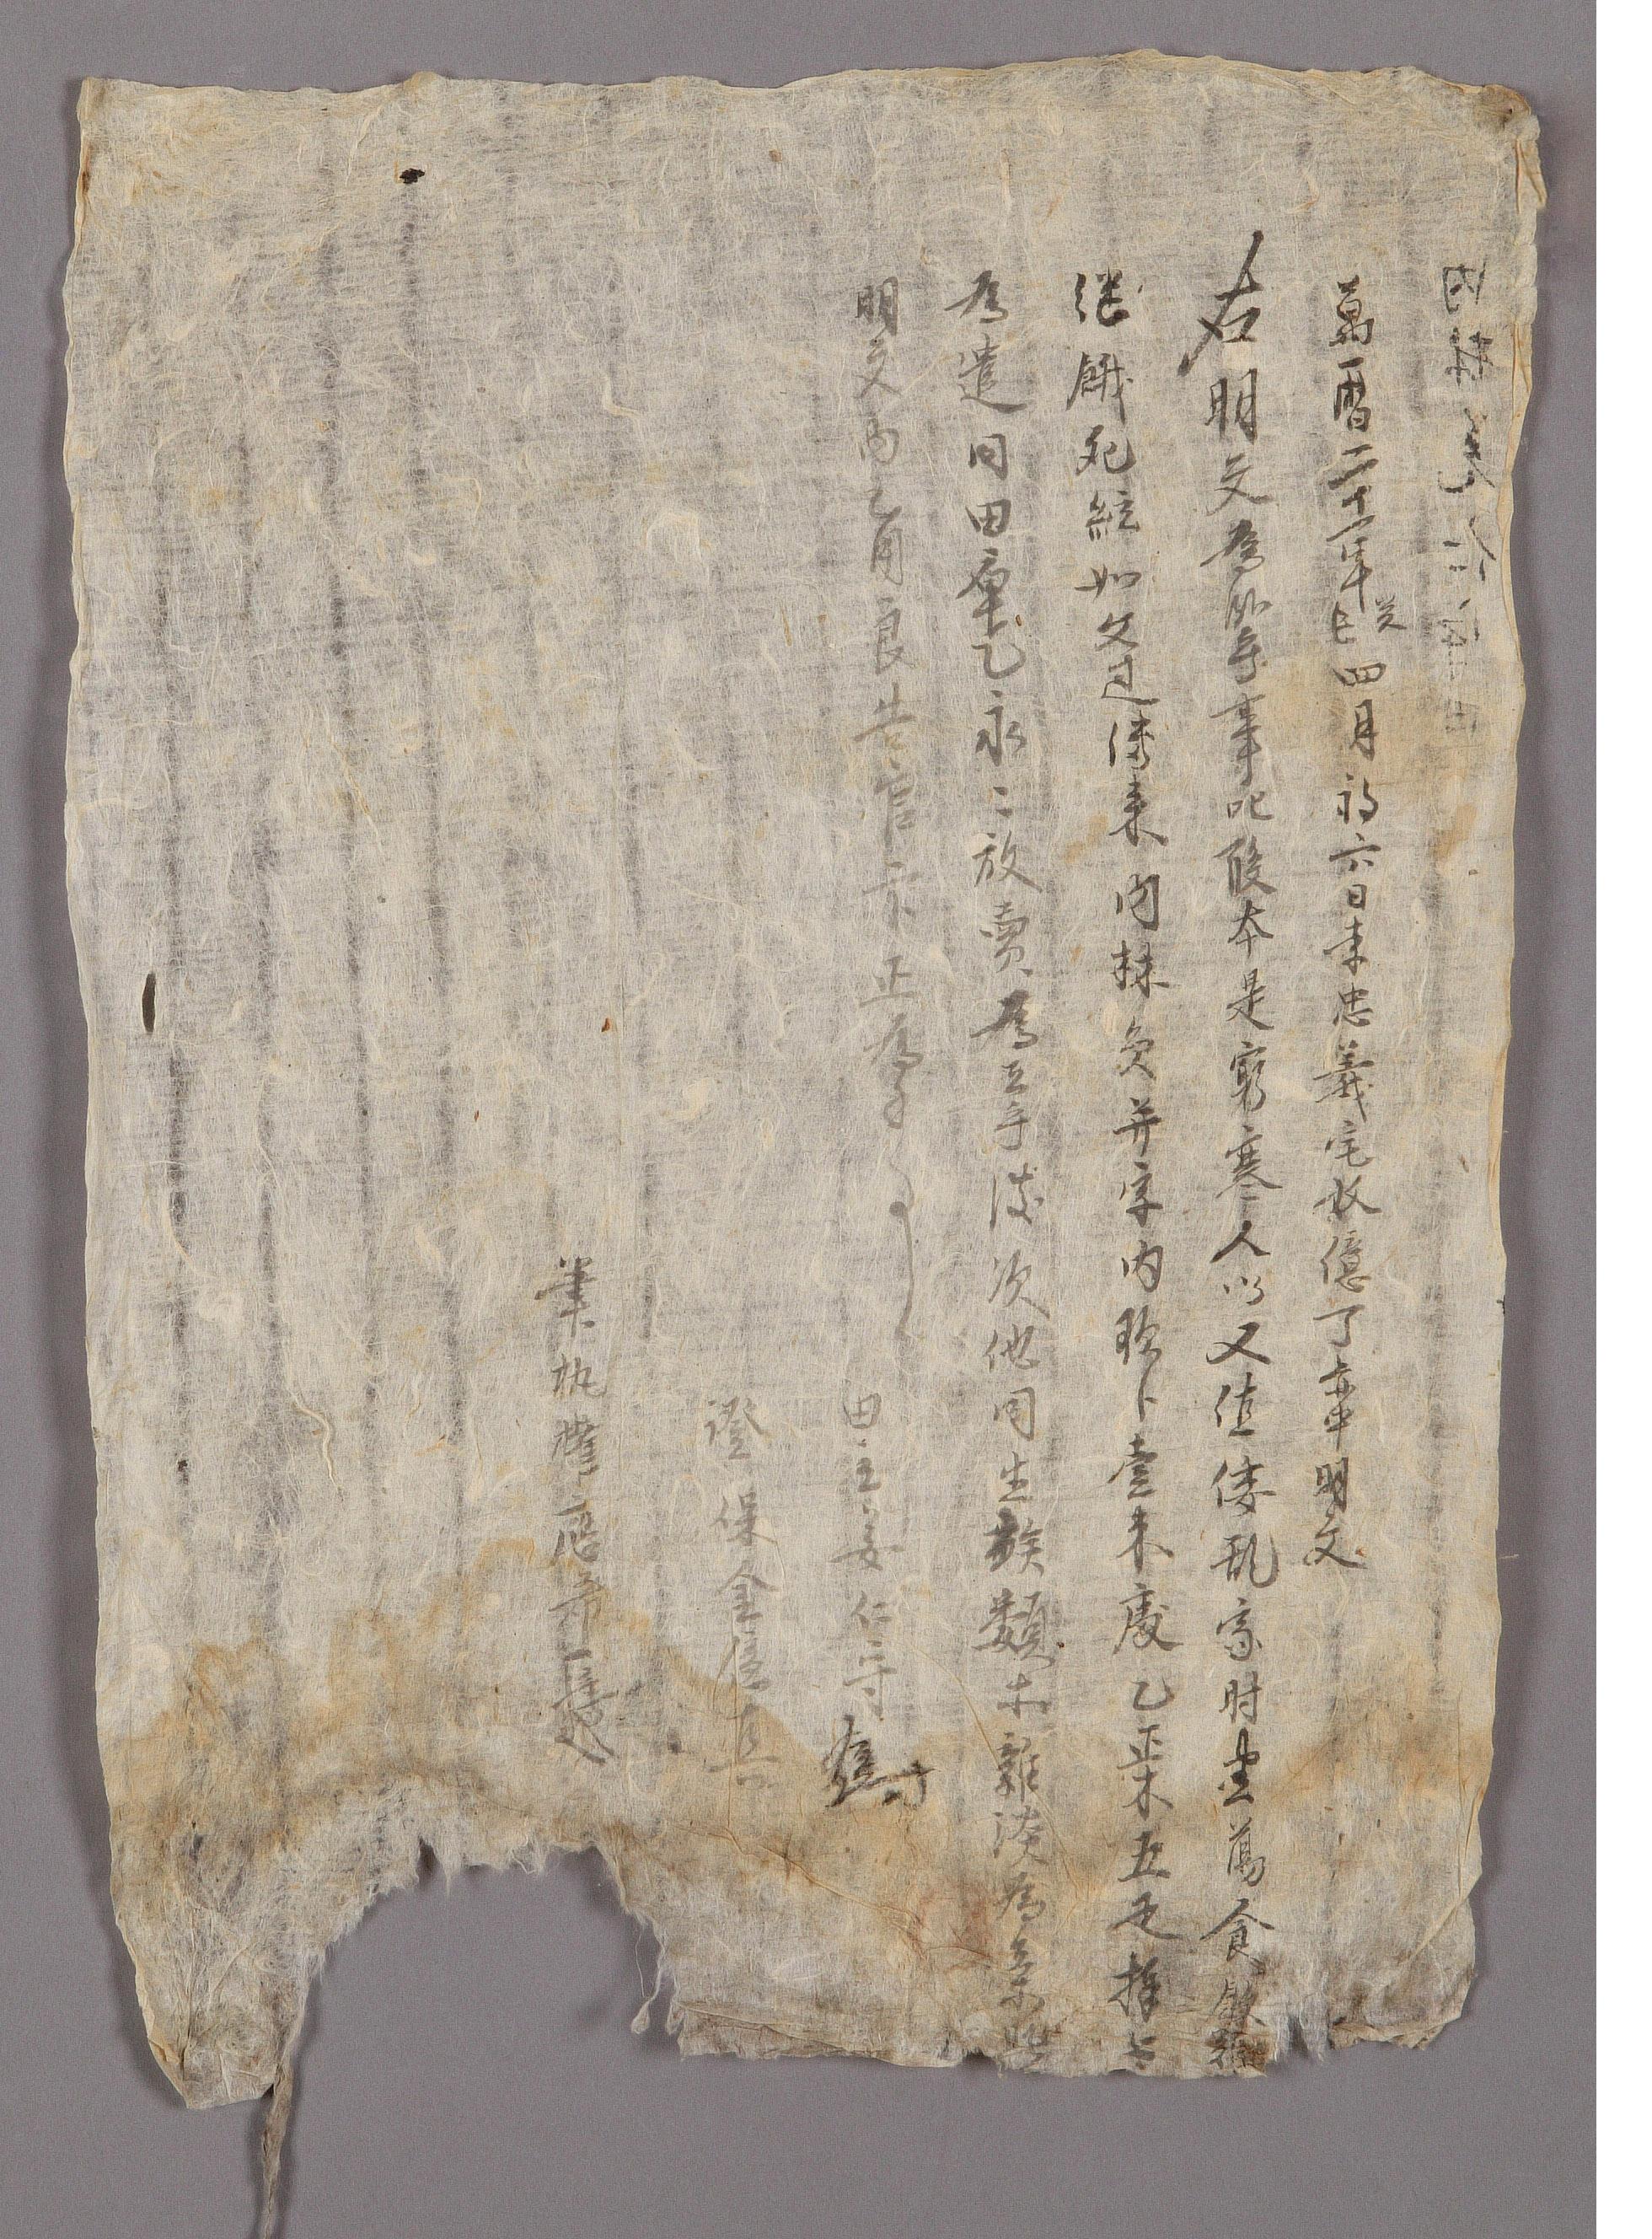 강인수(姜仁守)가 1593년에 작성한 전답 방매문기